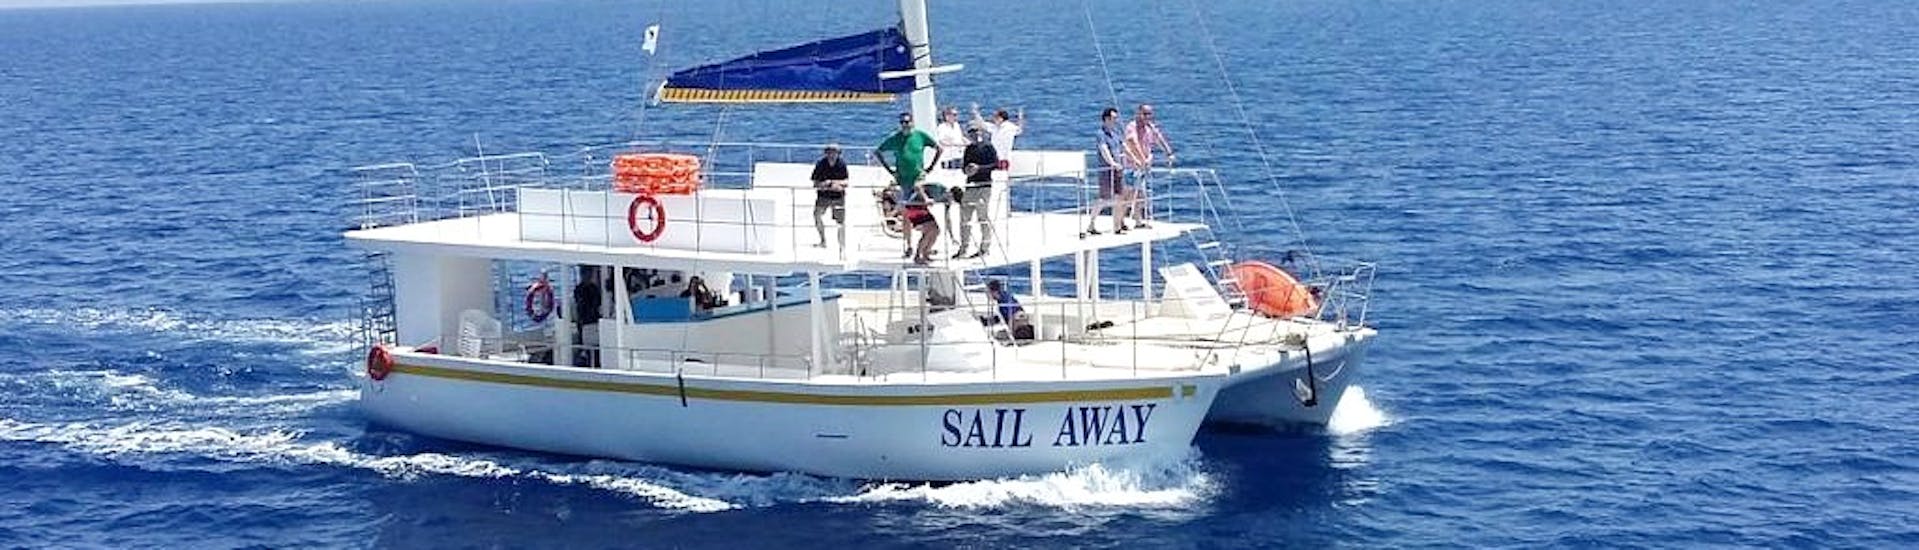 Foto van de Sail Away catamaran die door Relax-Cruises Limassol wordt gebruikt voor de boottochten.